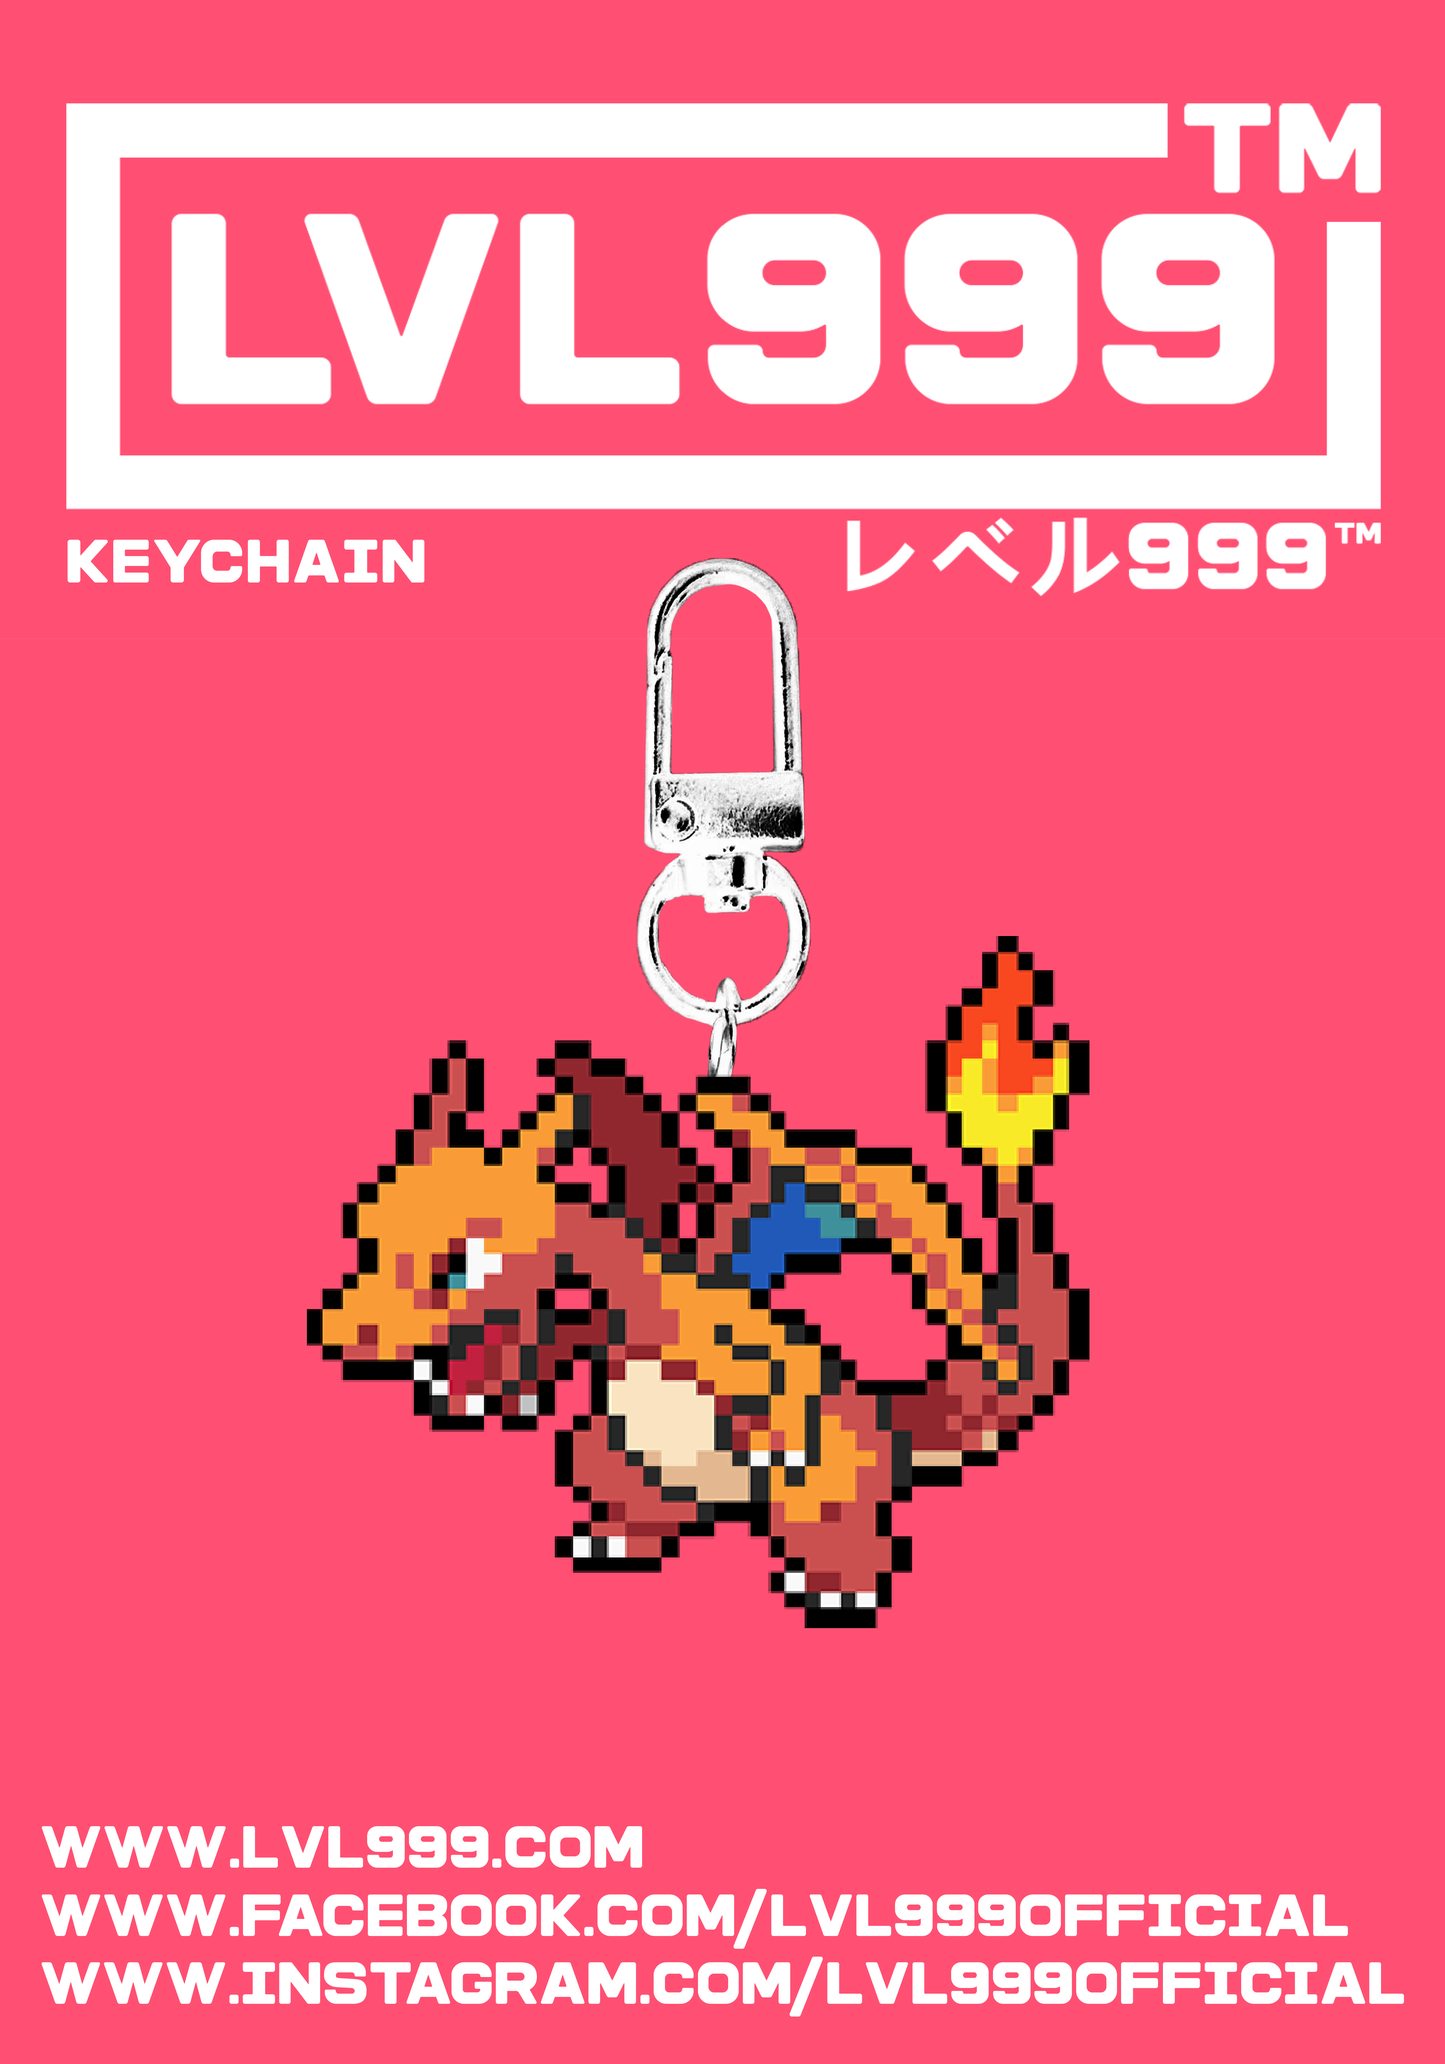 Chardz #009 - Keychain